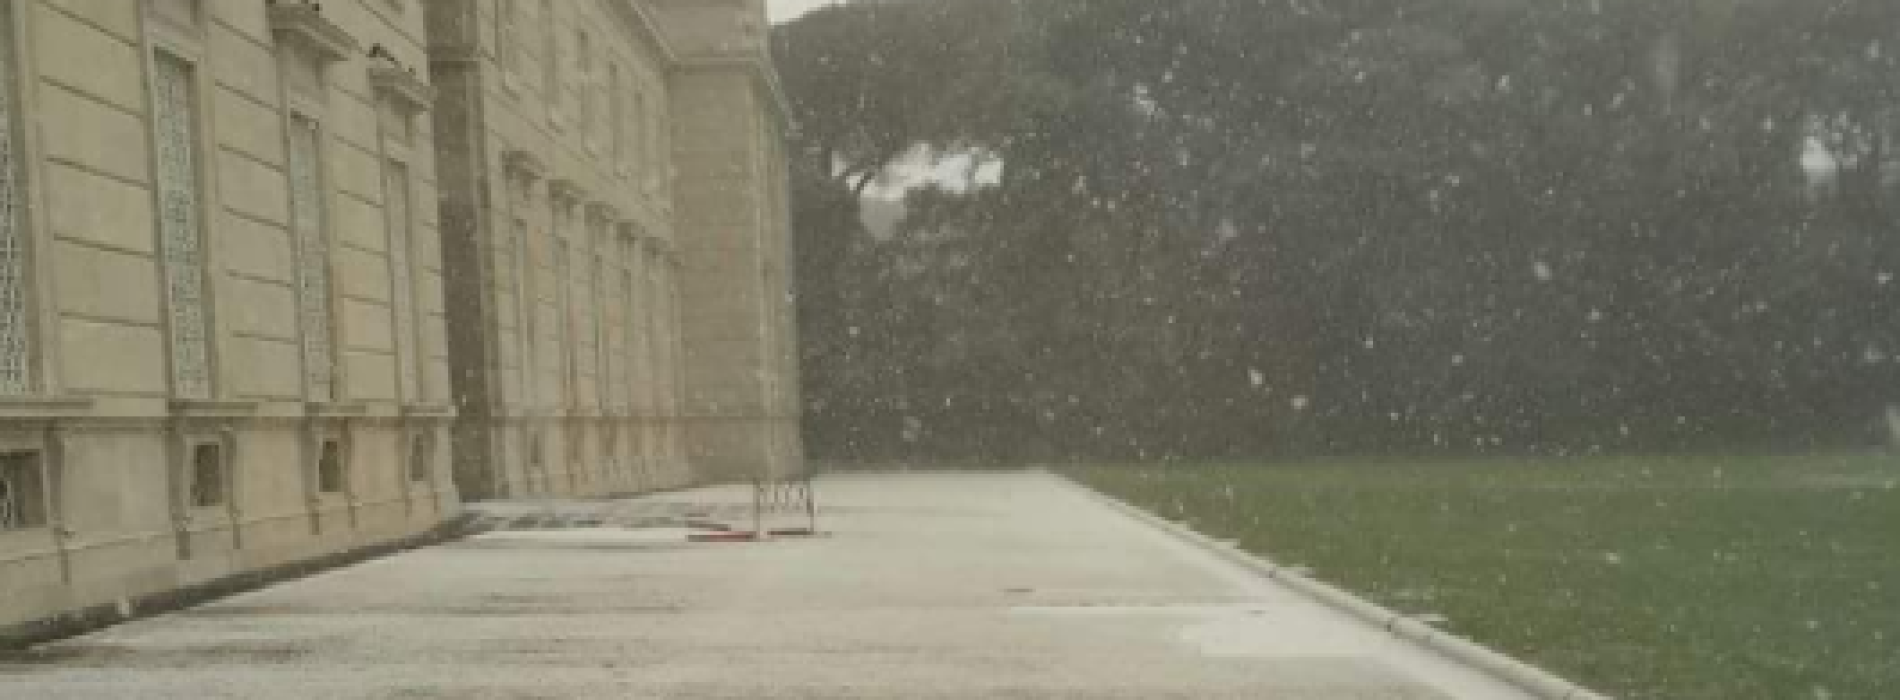 La Befana arriva a Caserta con una spruzzata di neve